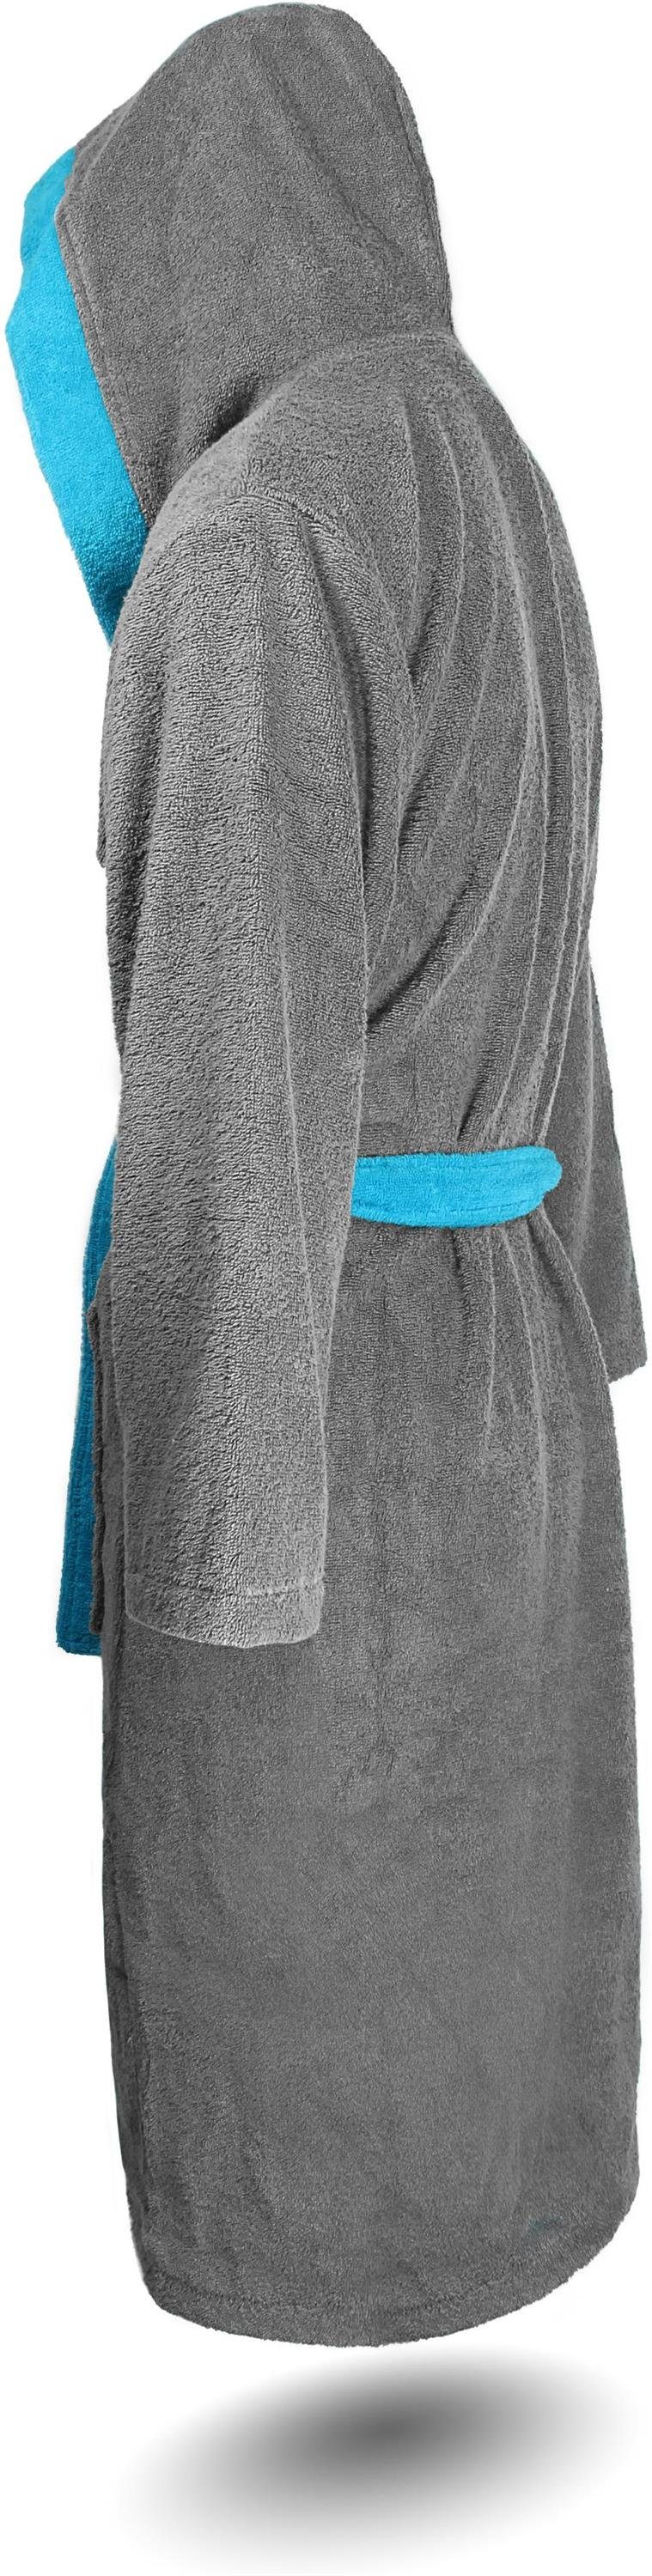 Baumwolle Herren für Damenbademantel, % 100 122, Damen normani Bindegürtel, Grau/Blau Kapuze, und Baumwolle, aus Saunamantel